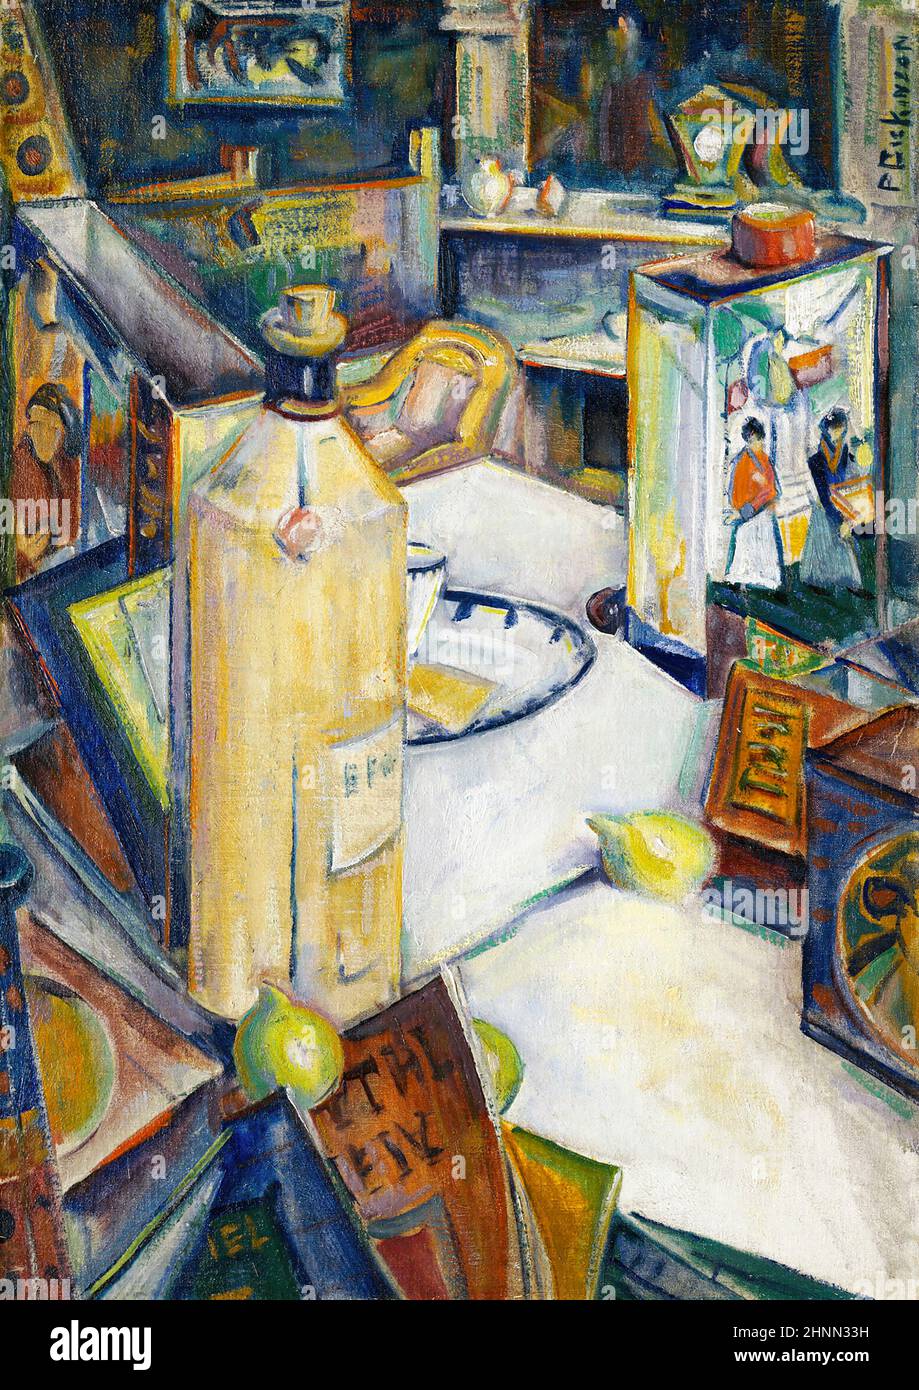 Still Life in Interior von dem amerikanischen Künstler Preston Dickinson (1889-1930), Öl auf Leinwand, c. 1920-22 Stockfoto